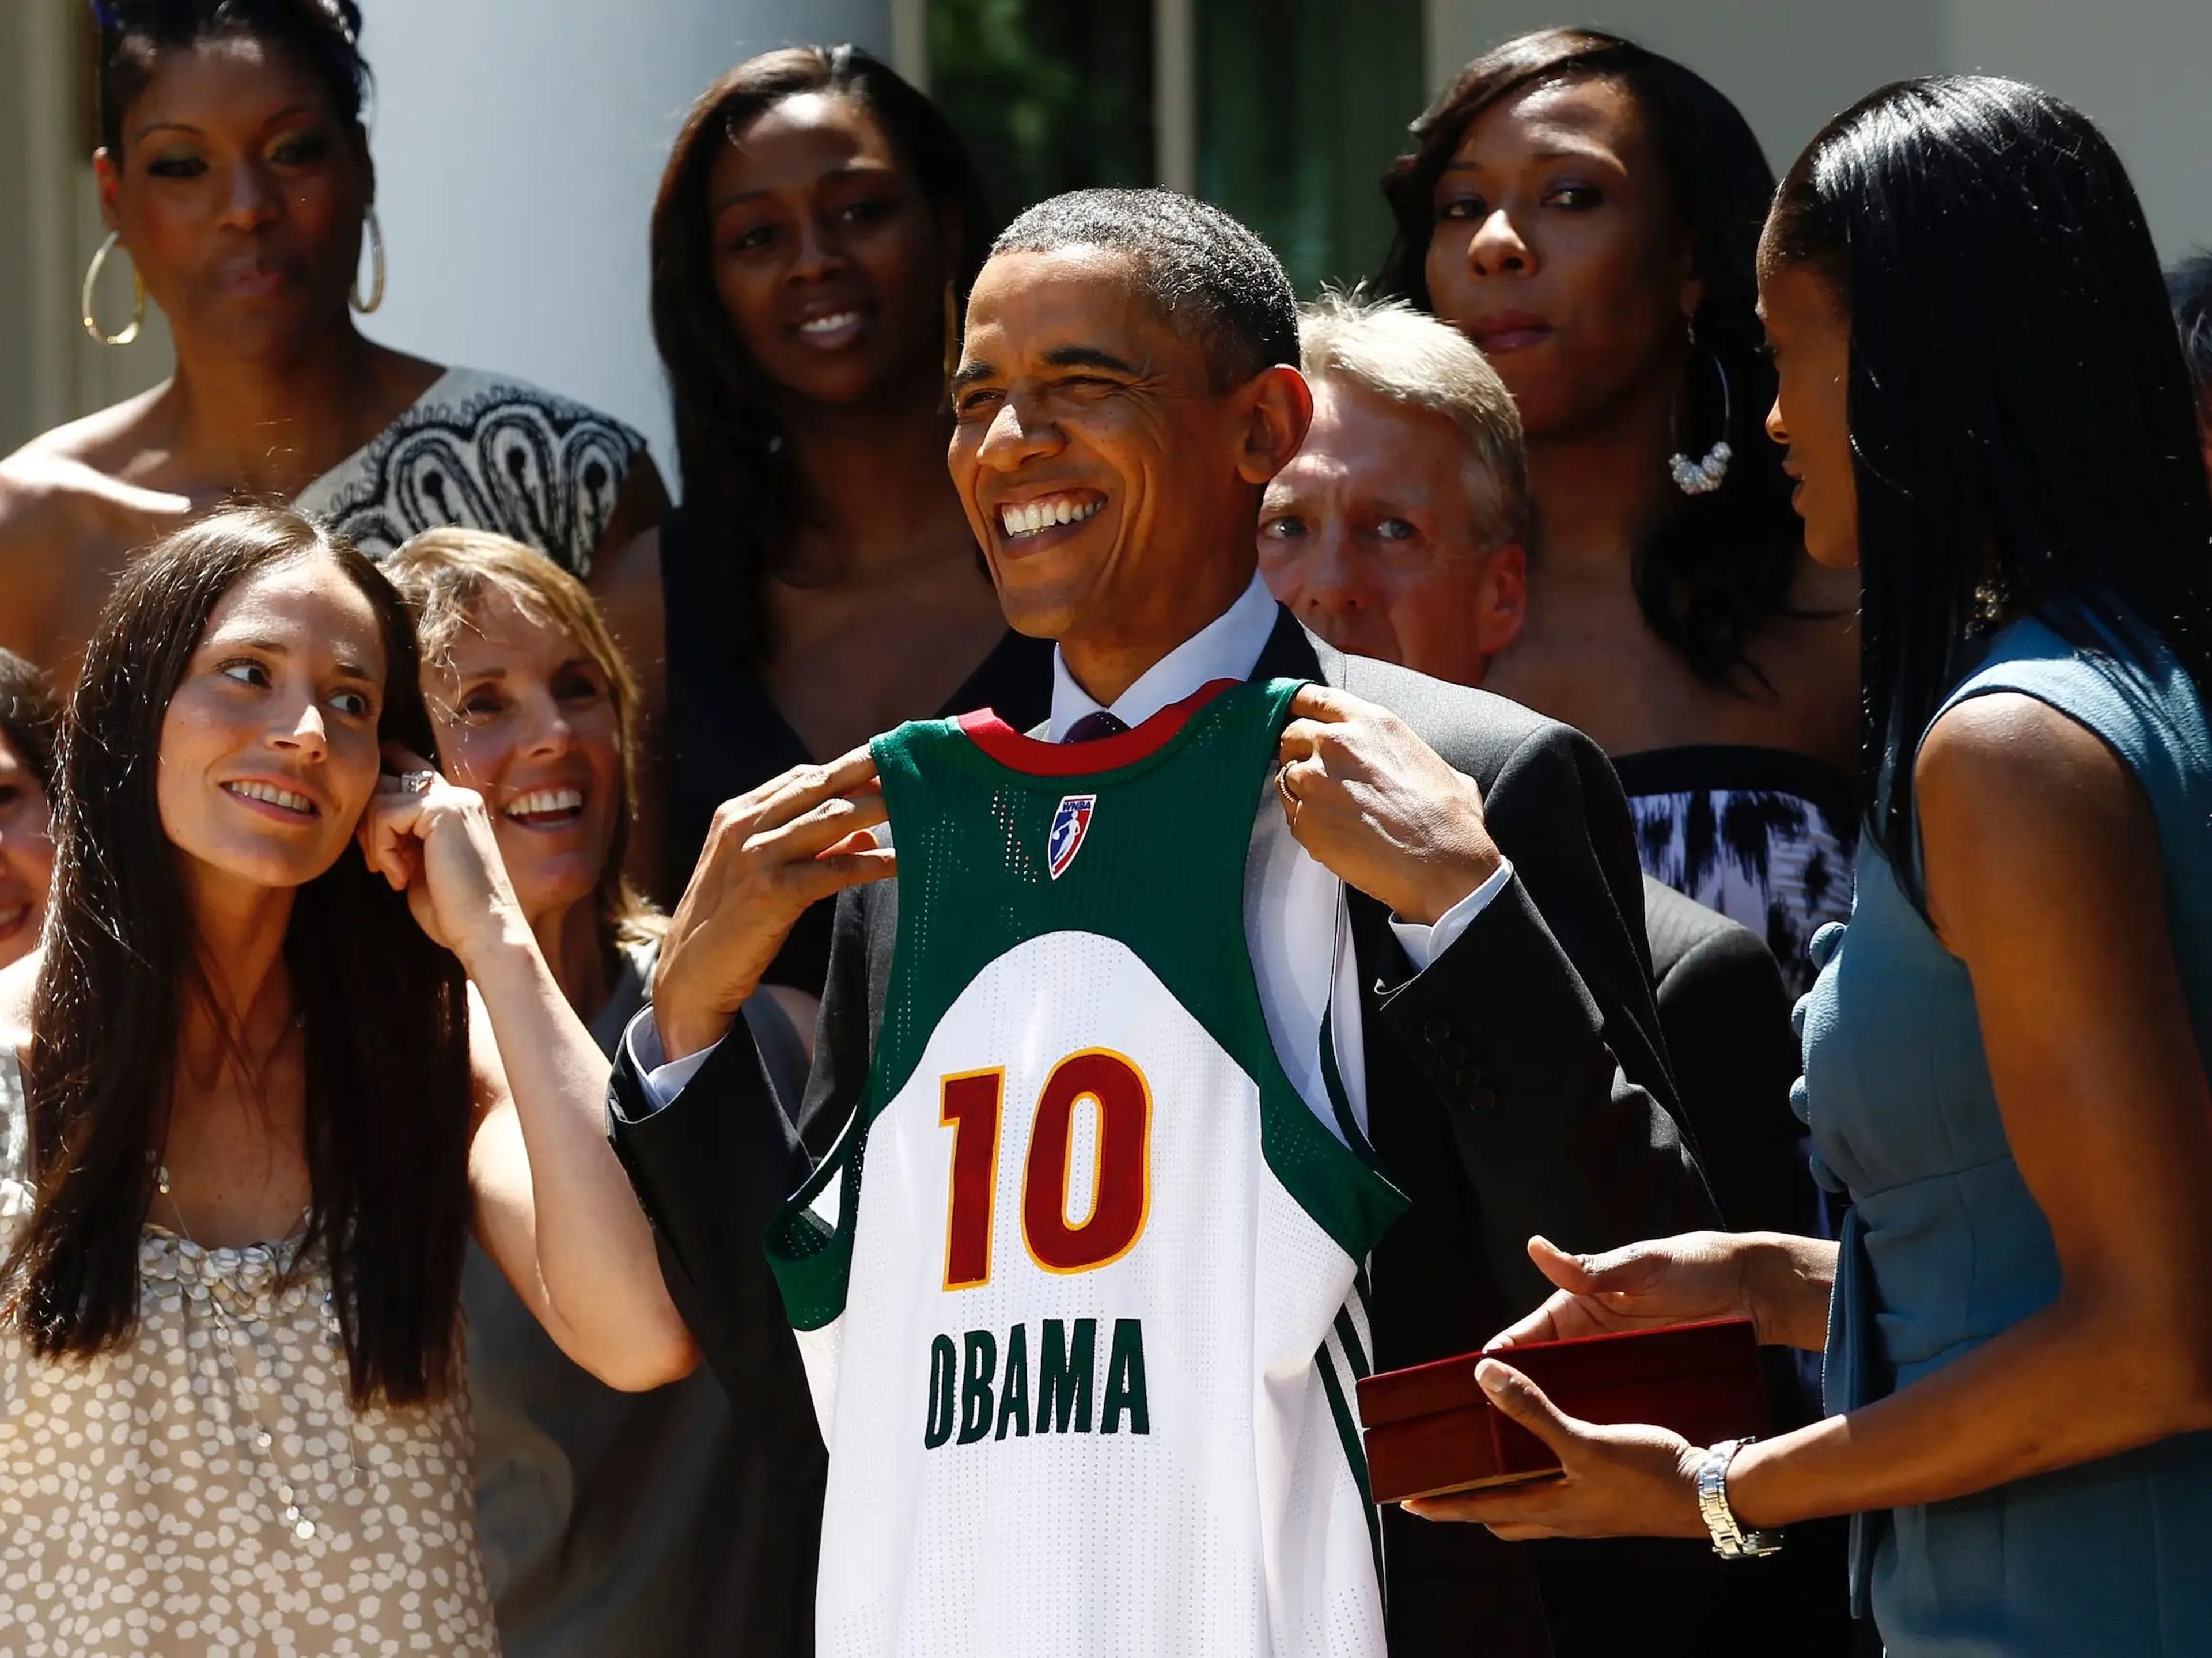 Se pone a la venta unas Nike diseñadas Obama por dólares | Insider